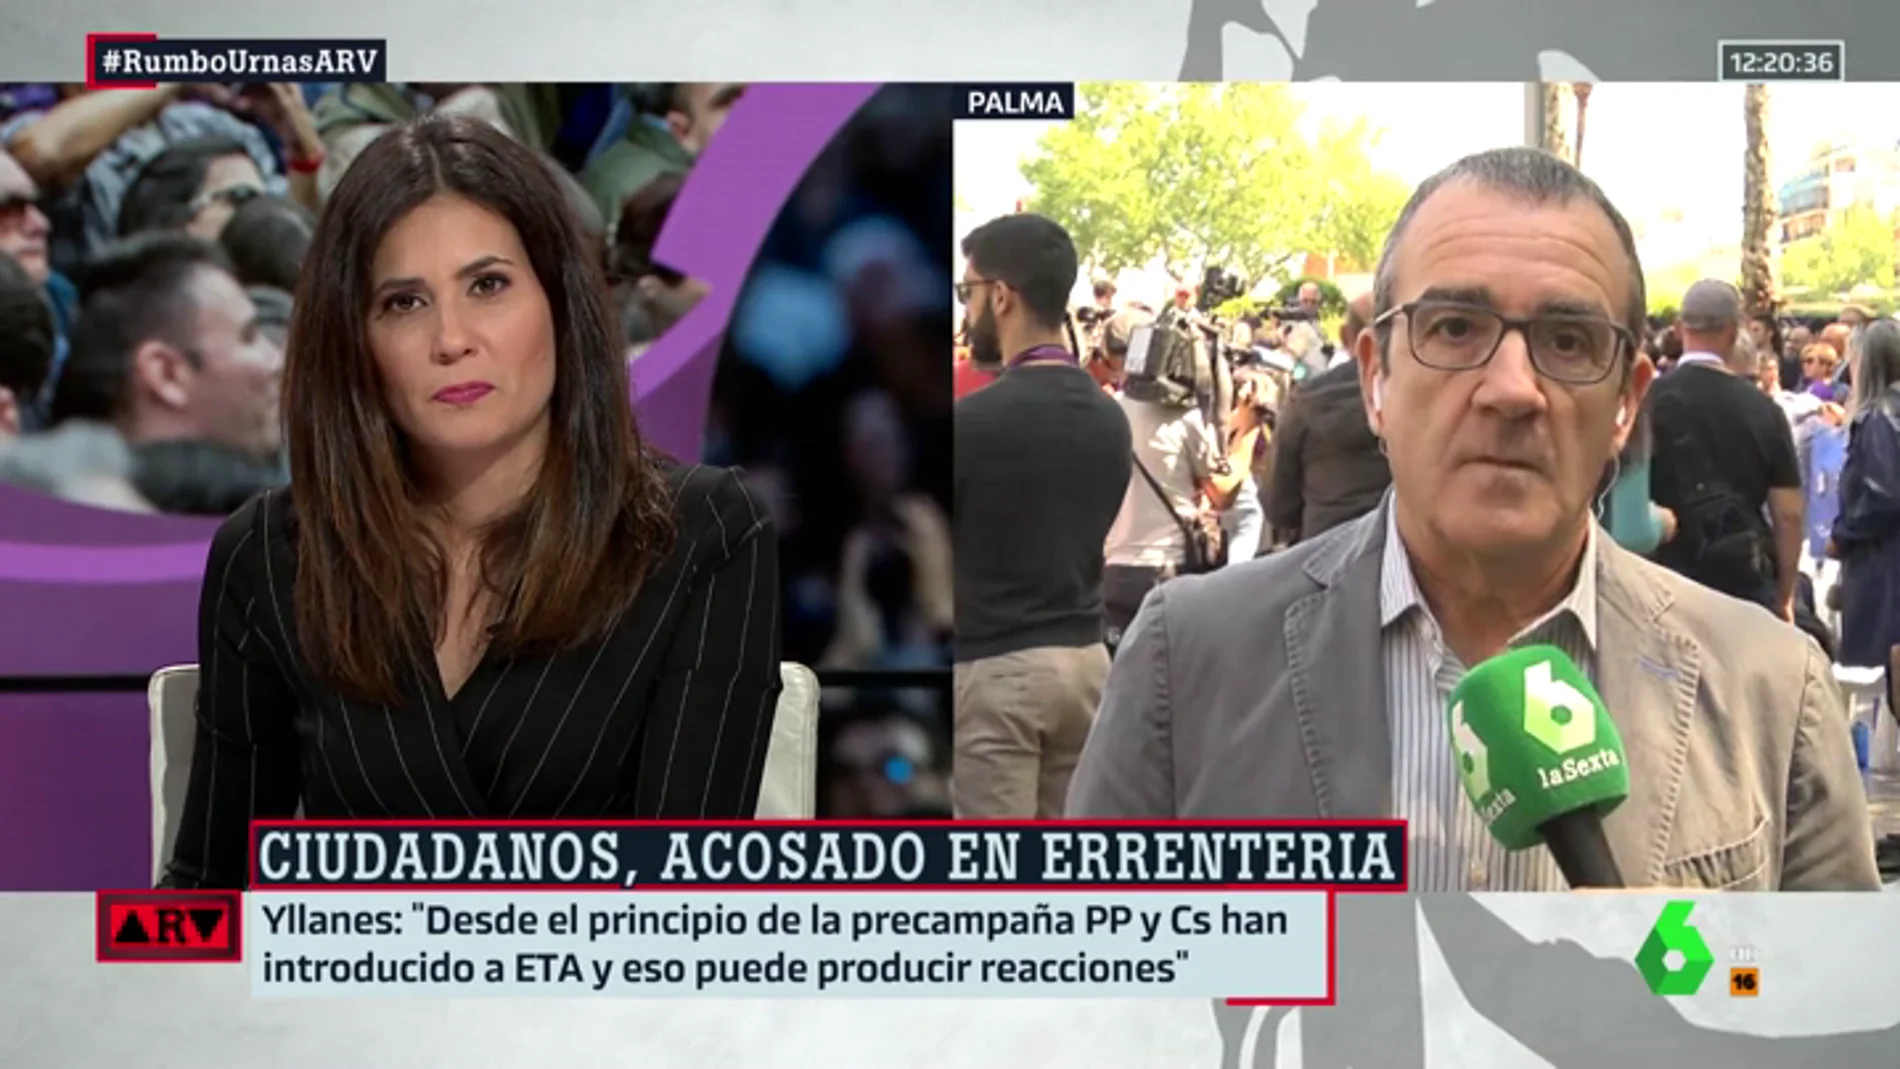 Juan Pedro Yllanes (Unidas Podemos): "PP y Ciudadanos han introducido a ETA en campaña y esto puede provocar reacciones como la de Errenteria"